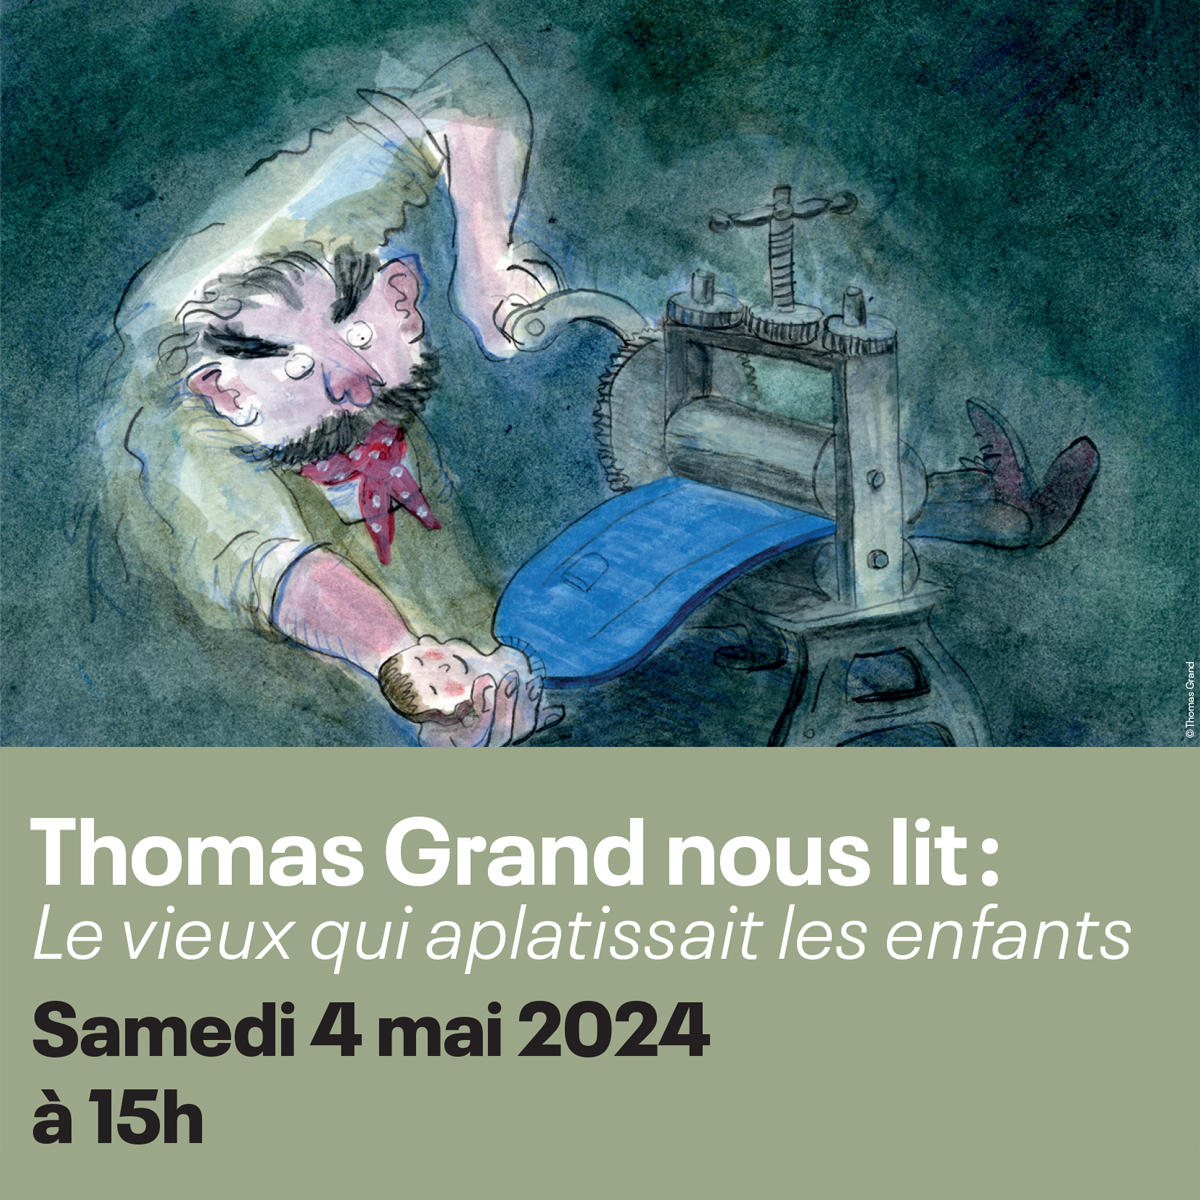 Lecture de Thomas Grand à la bibliothèque des Eaux-Vives (Genève), samedi 4 mai